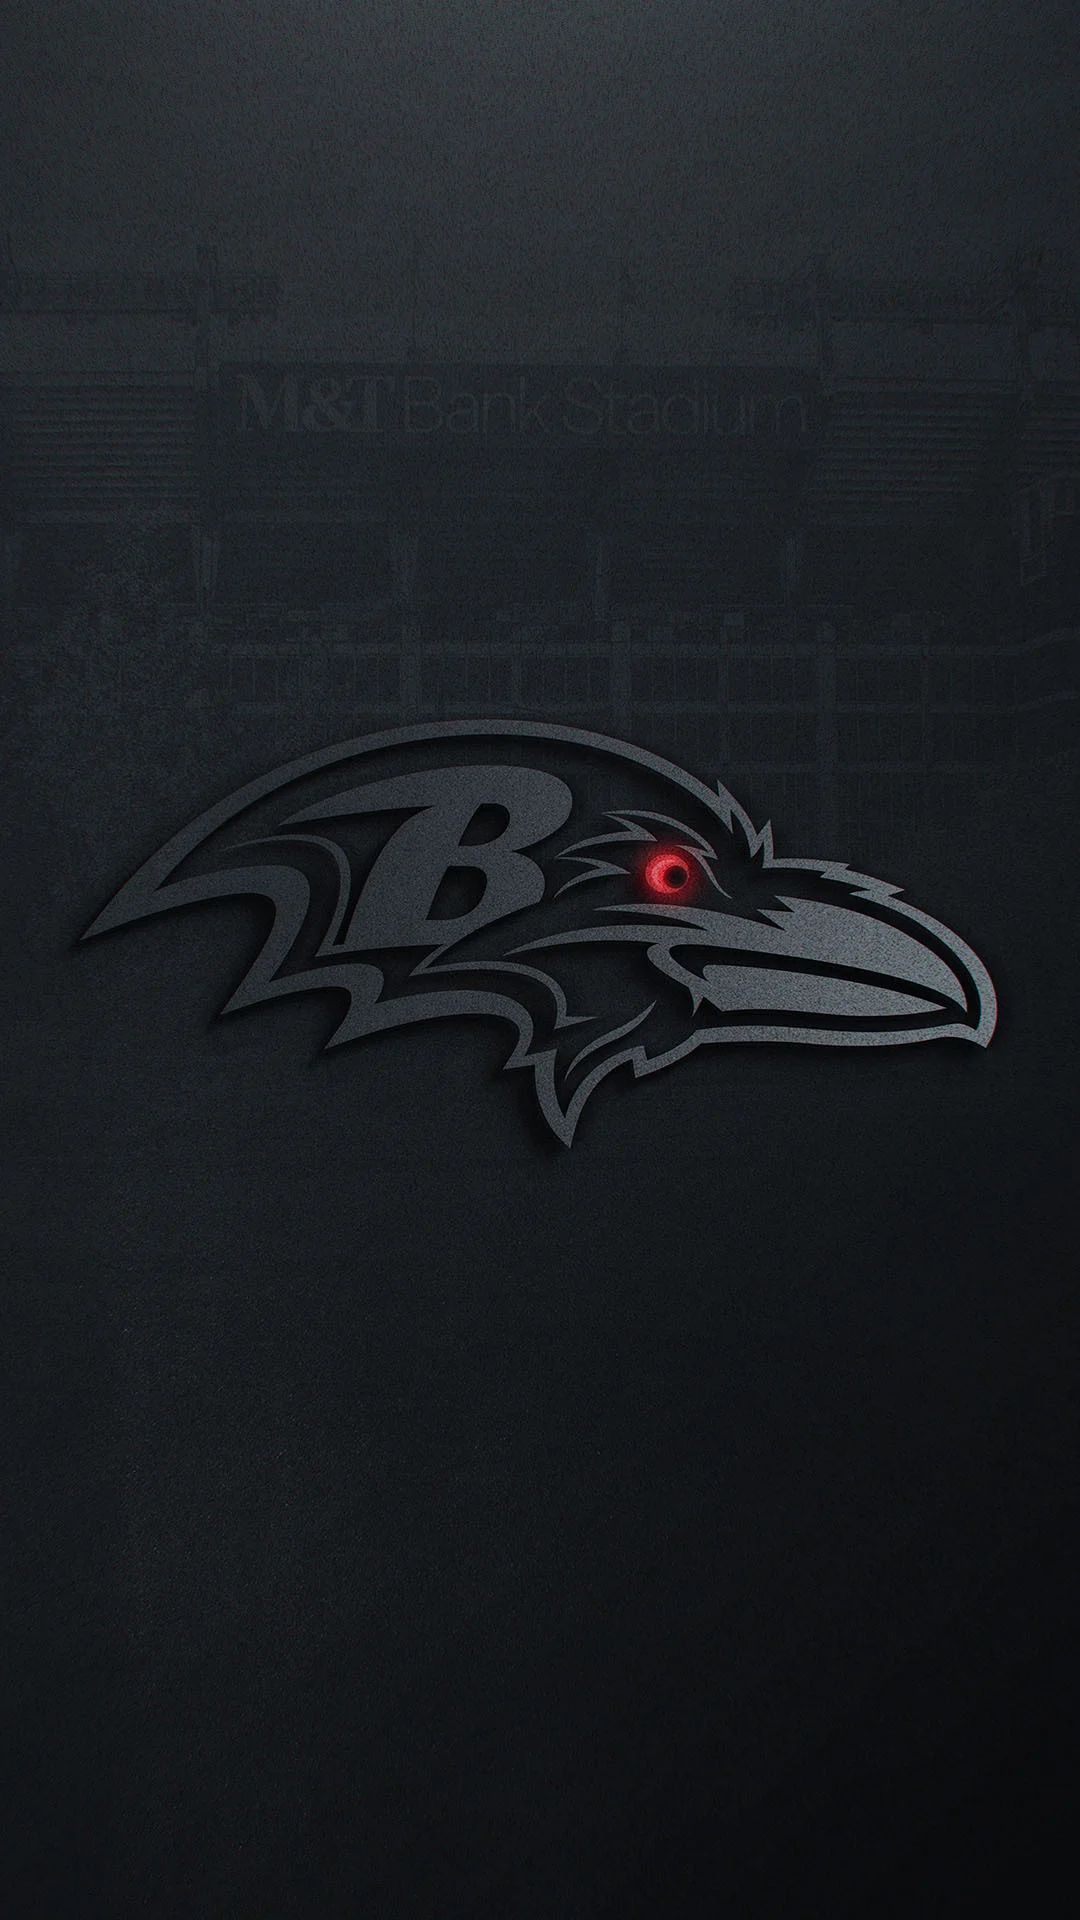 Baltimore Ravens Logo Pictures